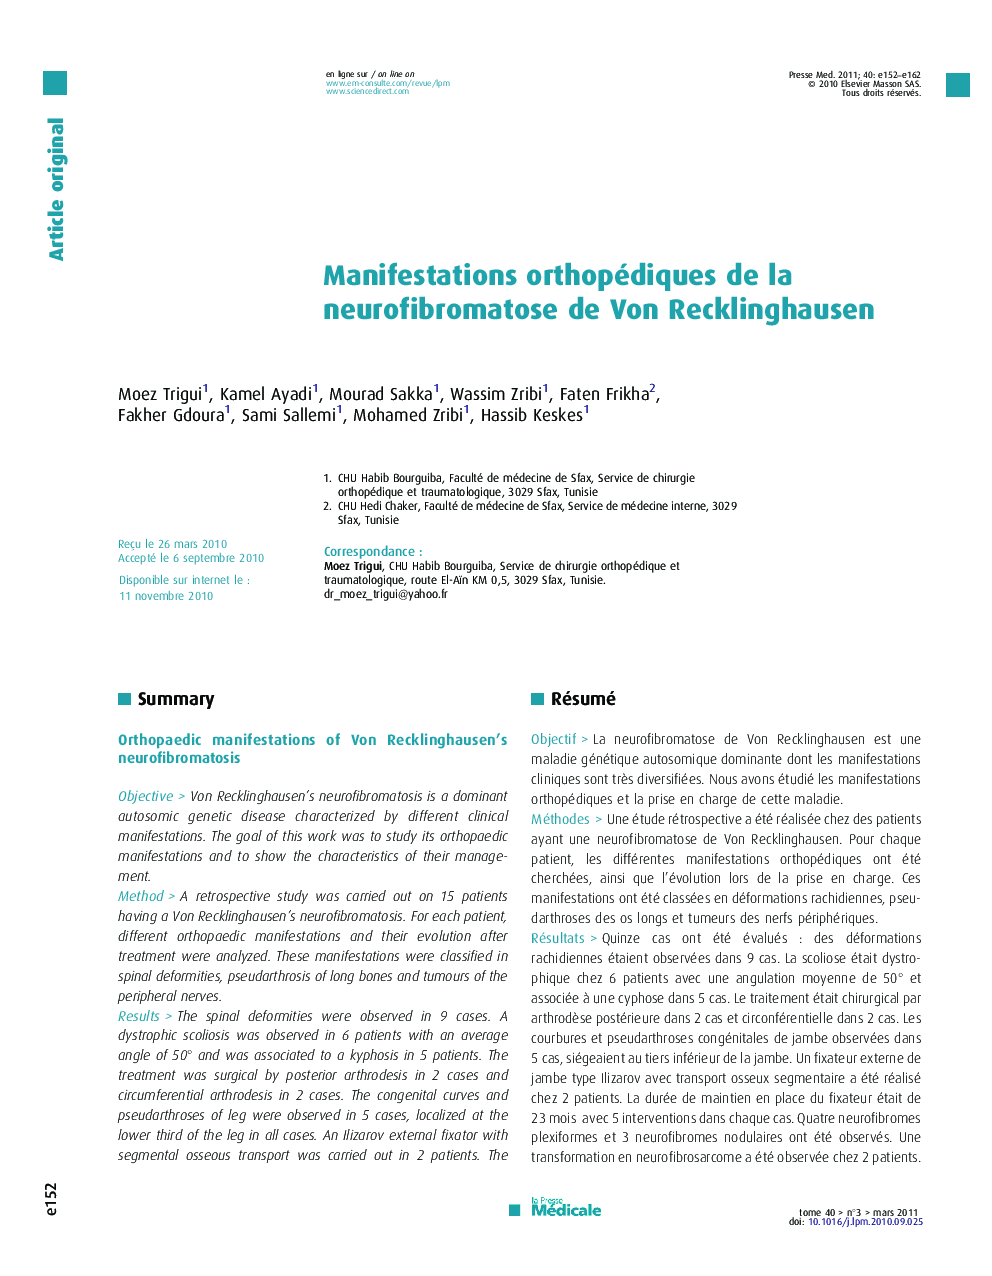 Manifestations orthopédiques de la neurofibromatose de Von Recklinghausen